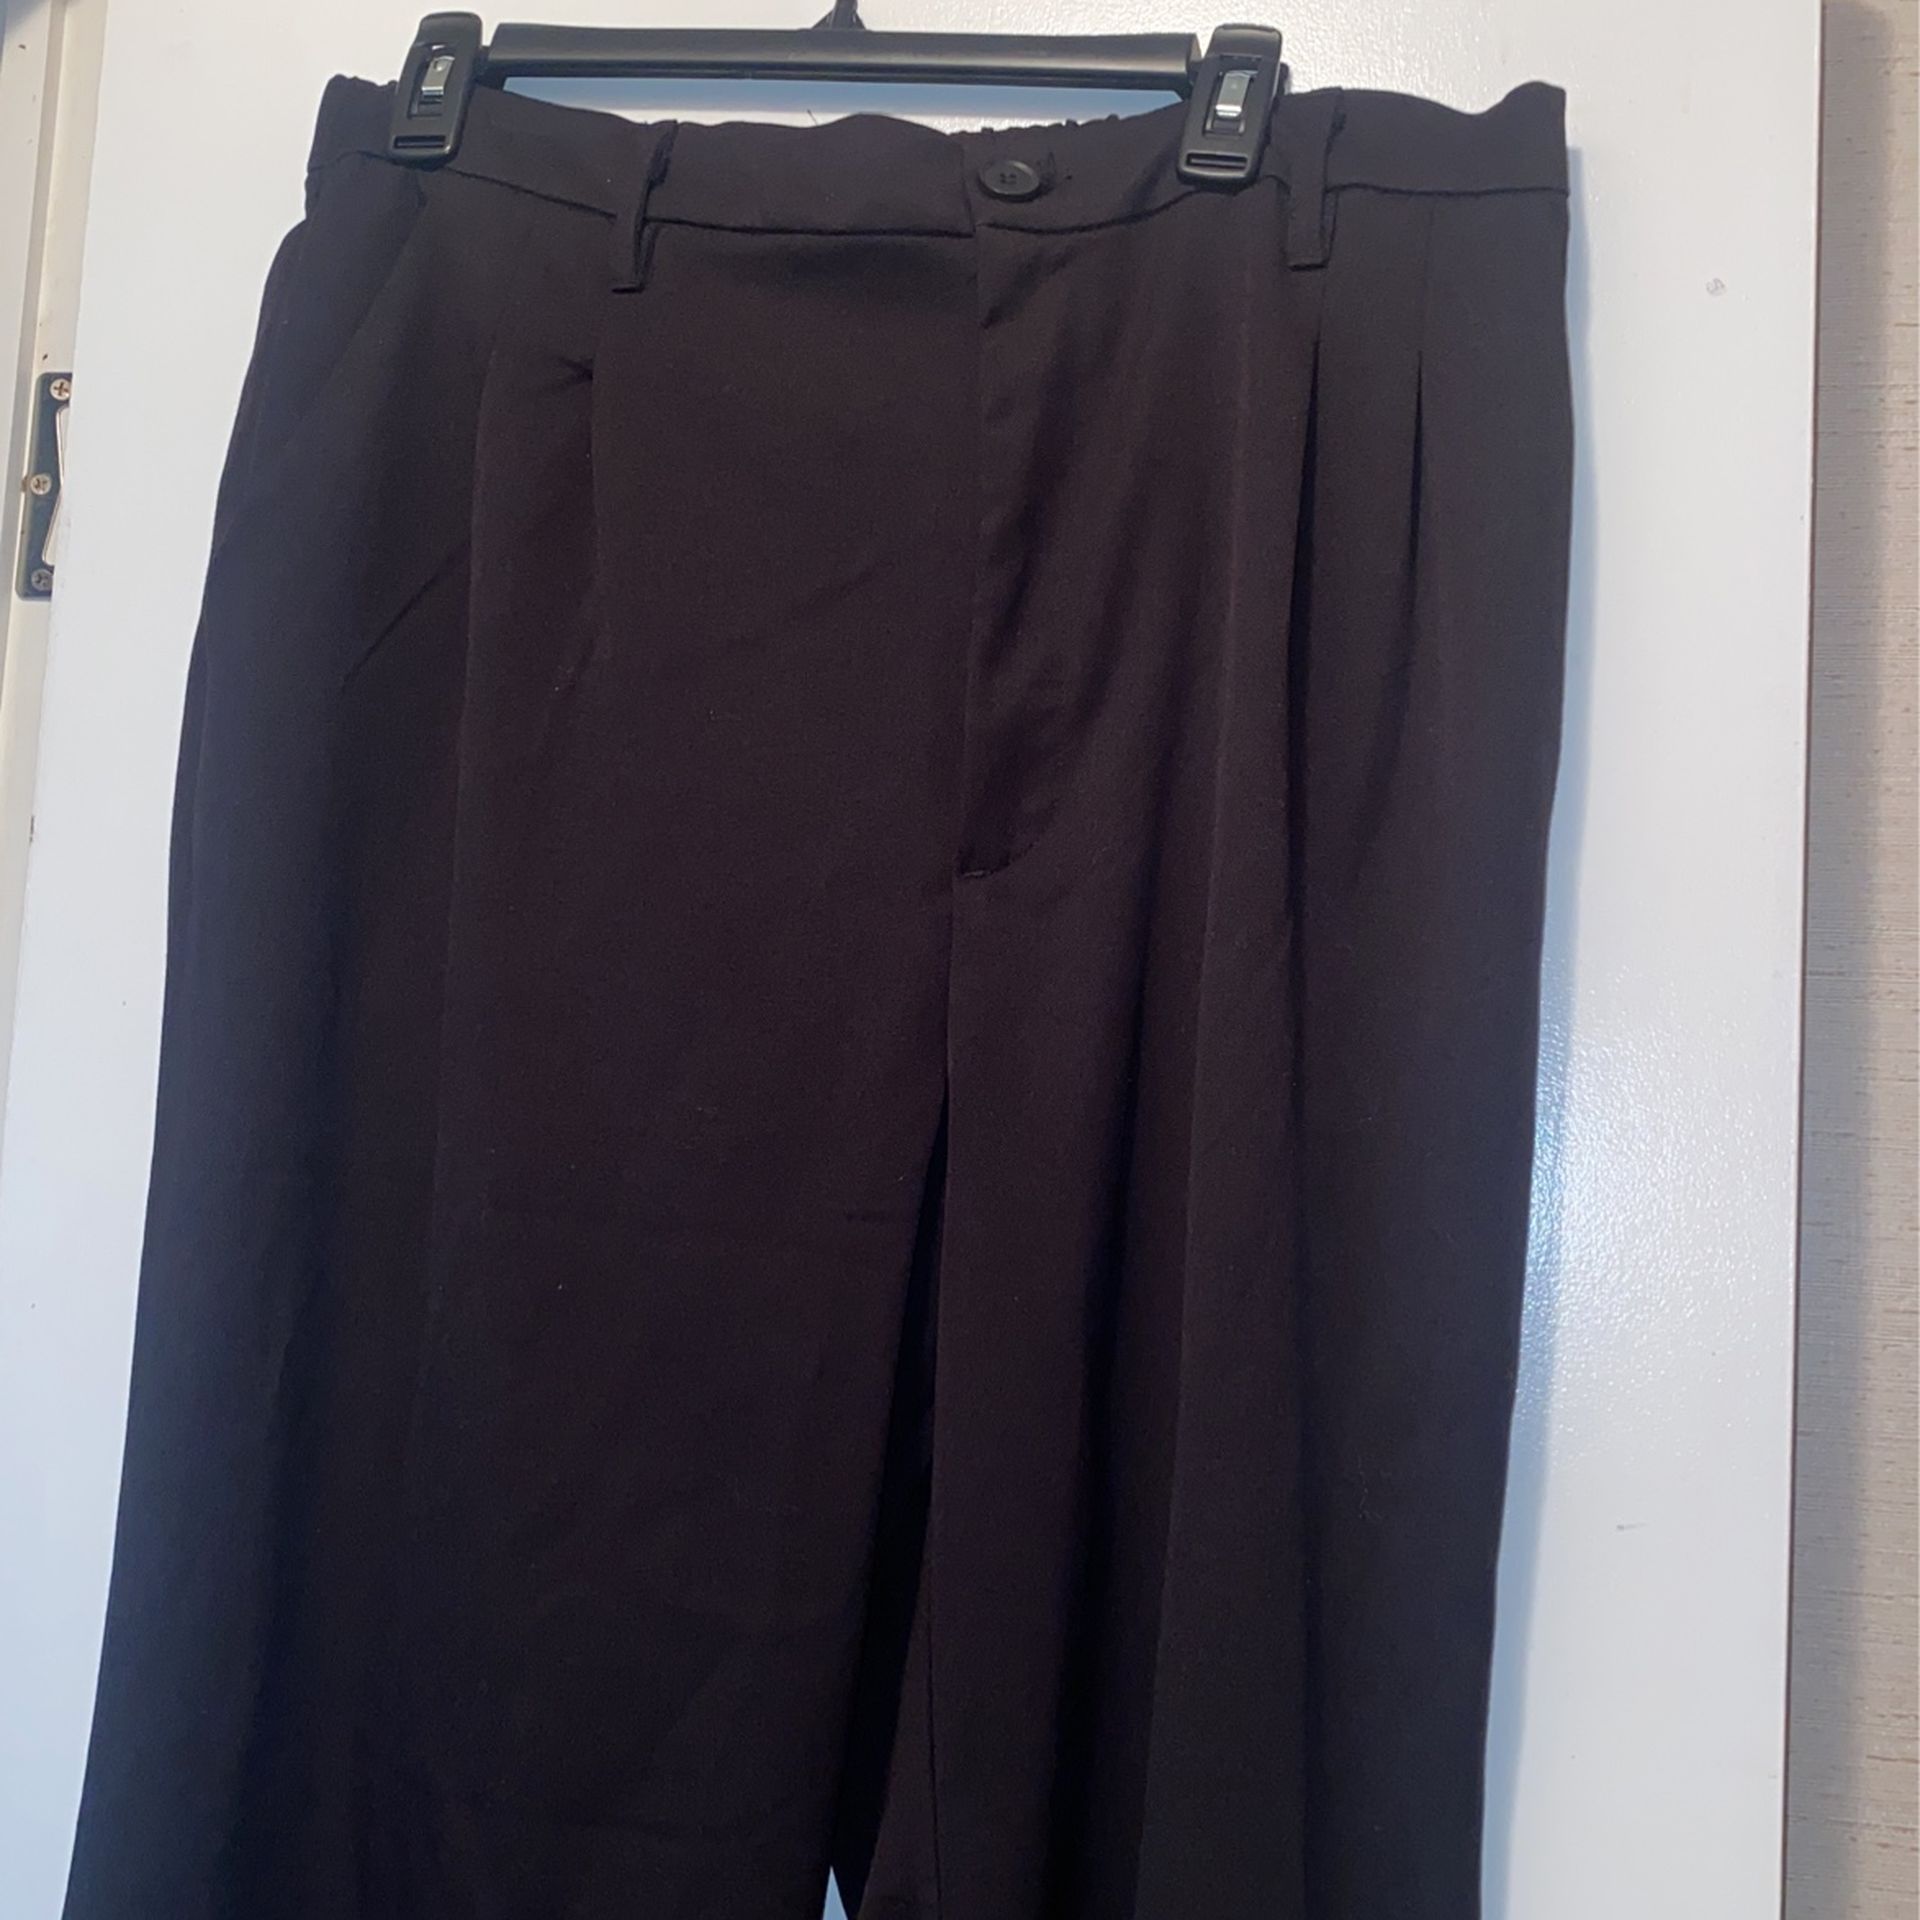 Women’s Black Dress Pants Size 16